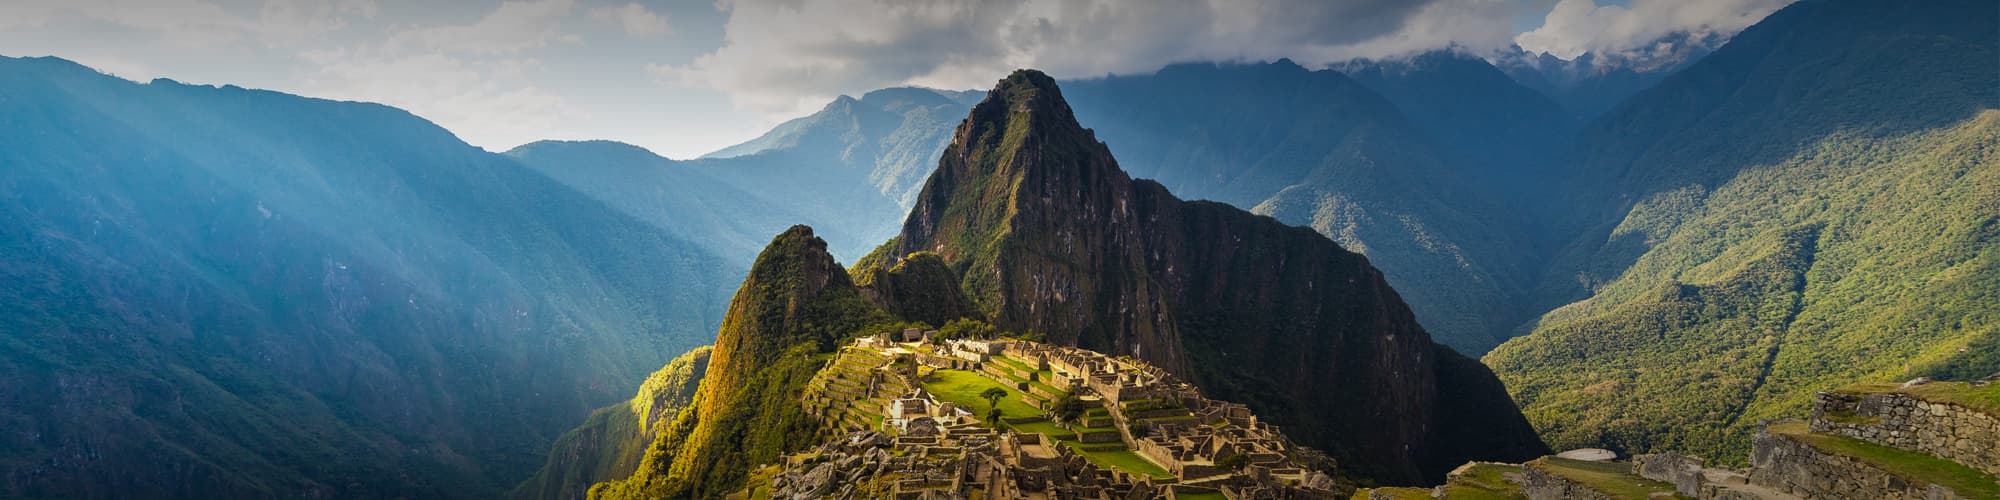 Randonnée avec mulet Pérou © fbxx